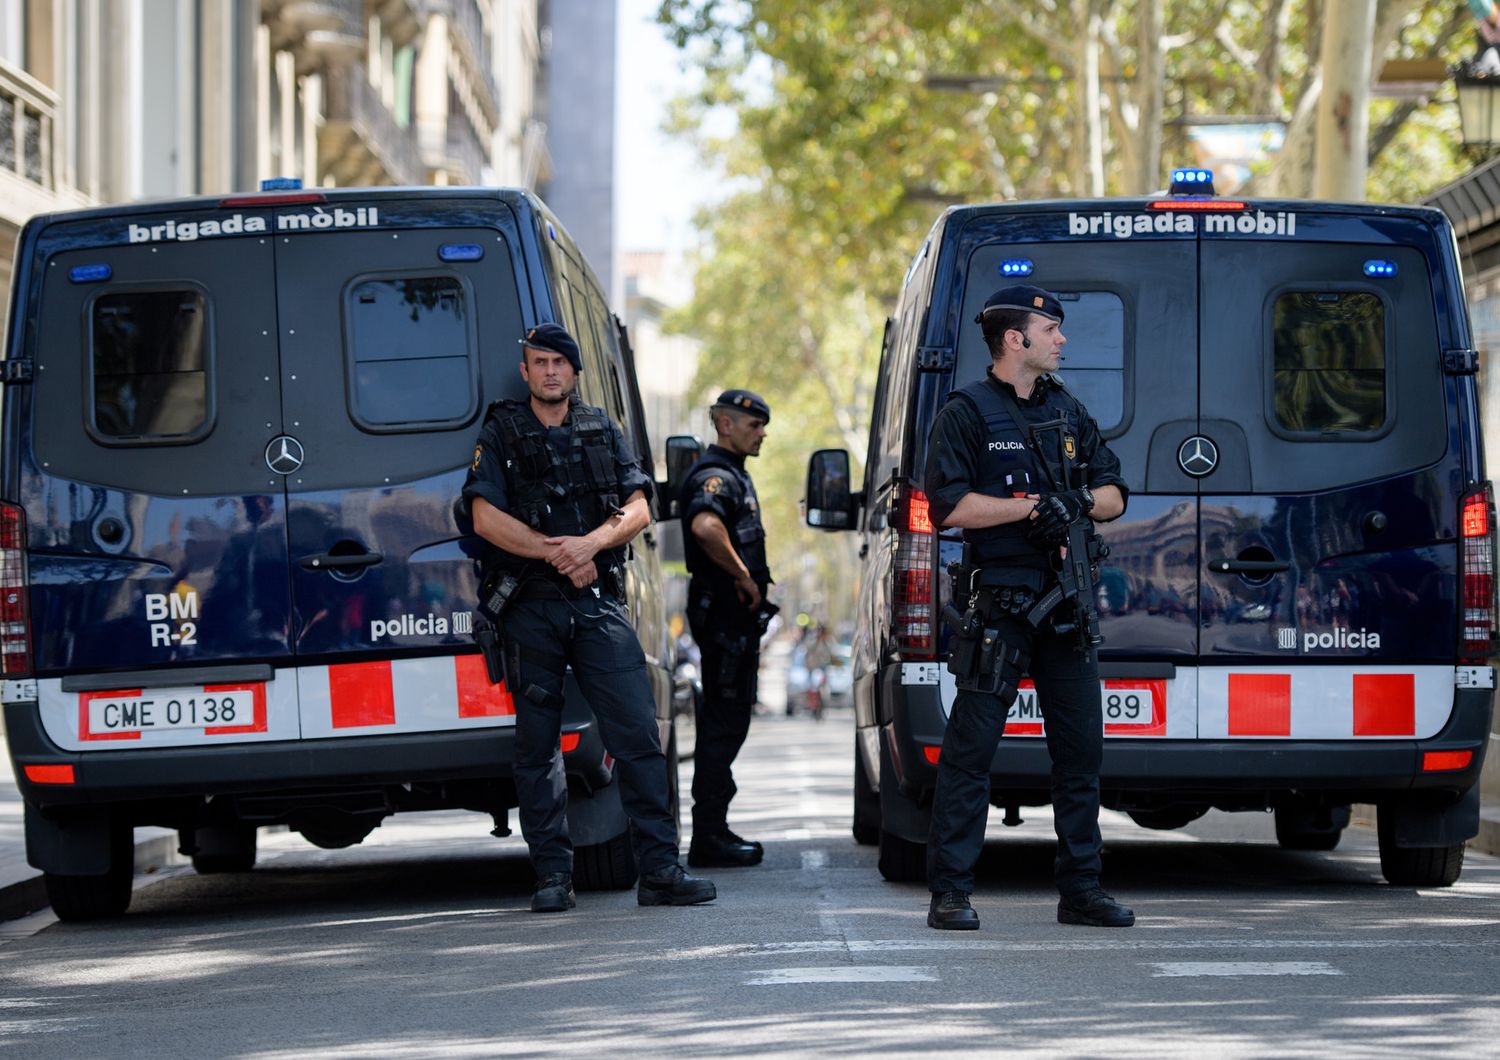 Perch&eacute; l&#39;intelligence spagnola si aspettava una strage a Barcellona